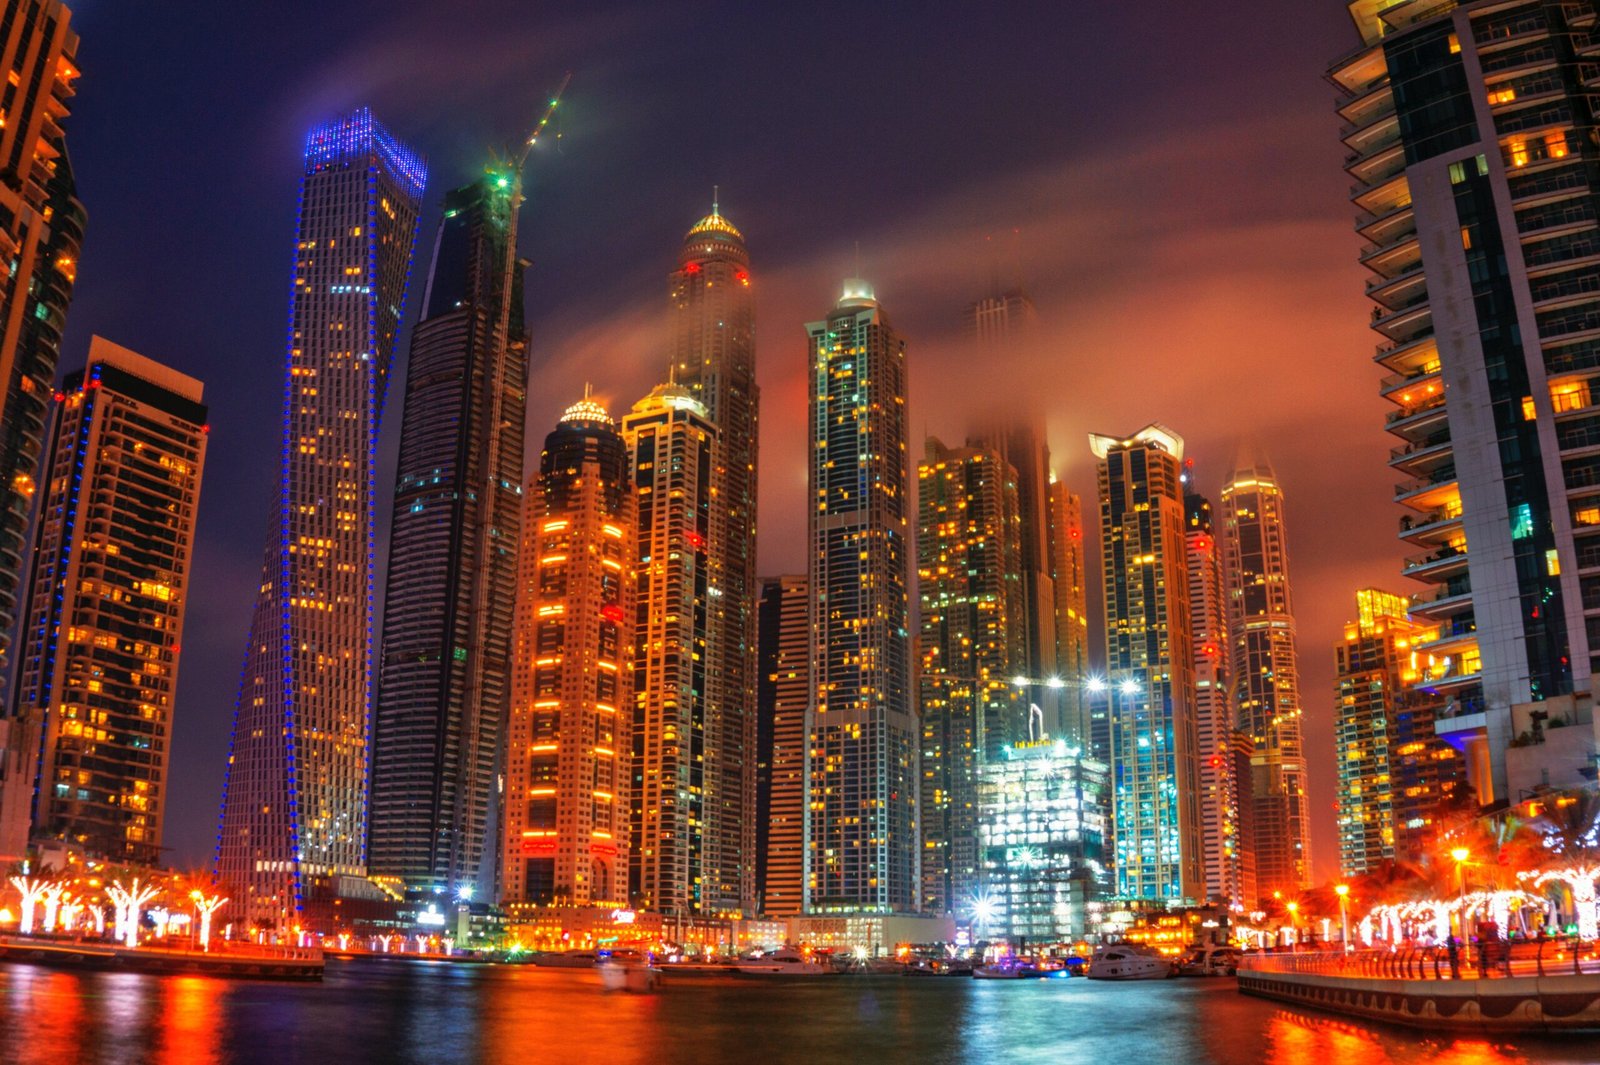 Dubai luxury real estate with panoramic skyline views at night